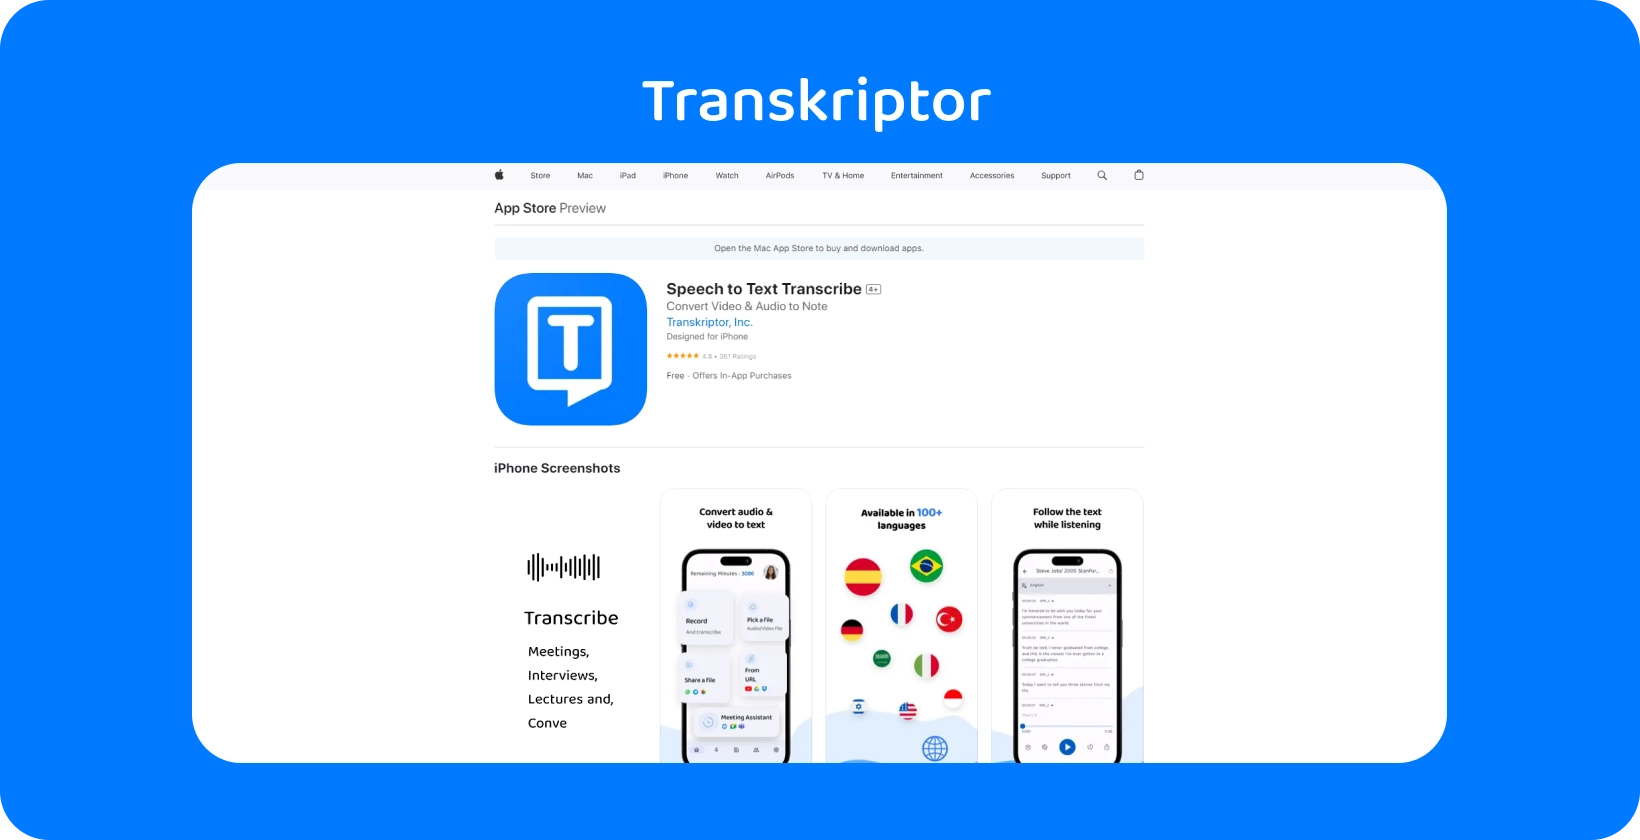 Transkriptor aplikacija prikazana na iPhone, naglašavajući njezine mogućnosti transkripcije govora u tekst.